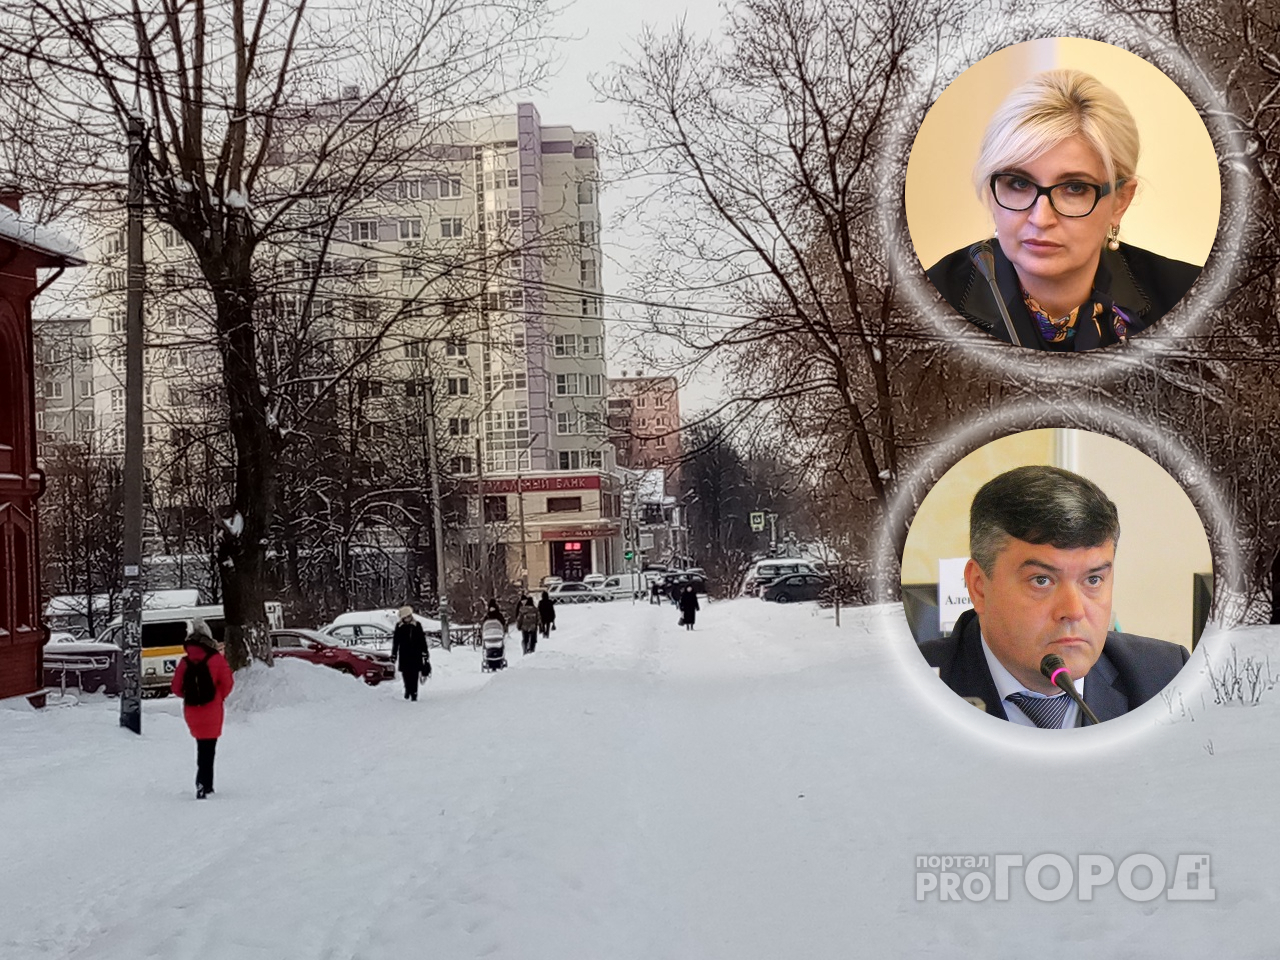 Отвечали за еду и безопасность: из мэрии Ярославля уволились два главы департаментов